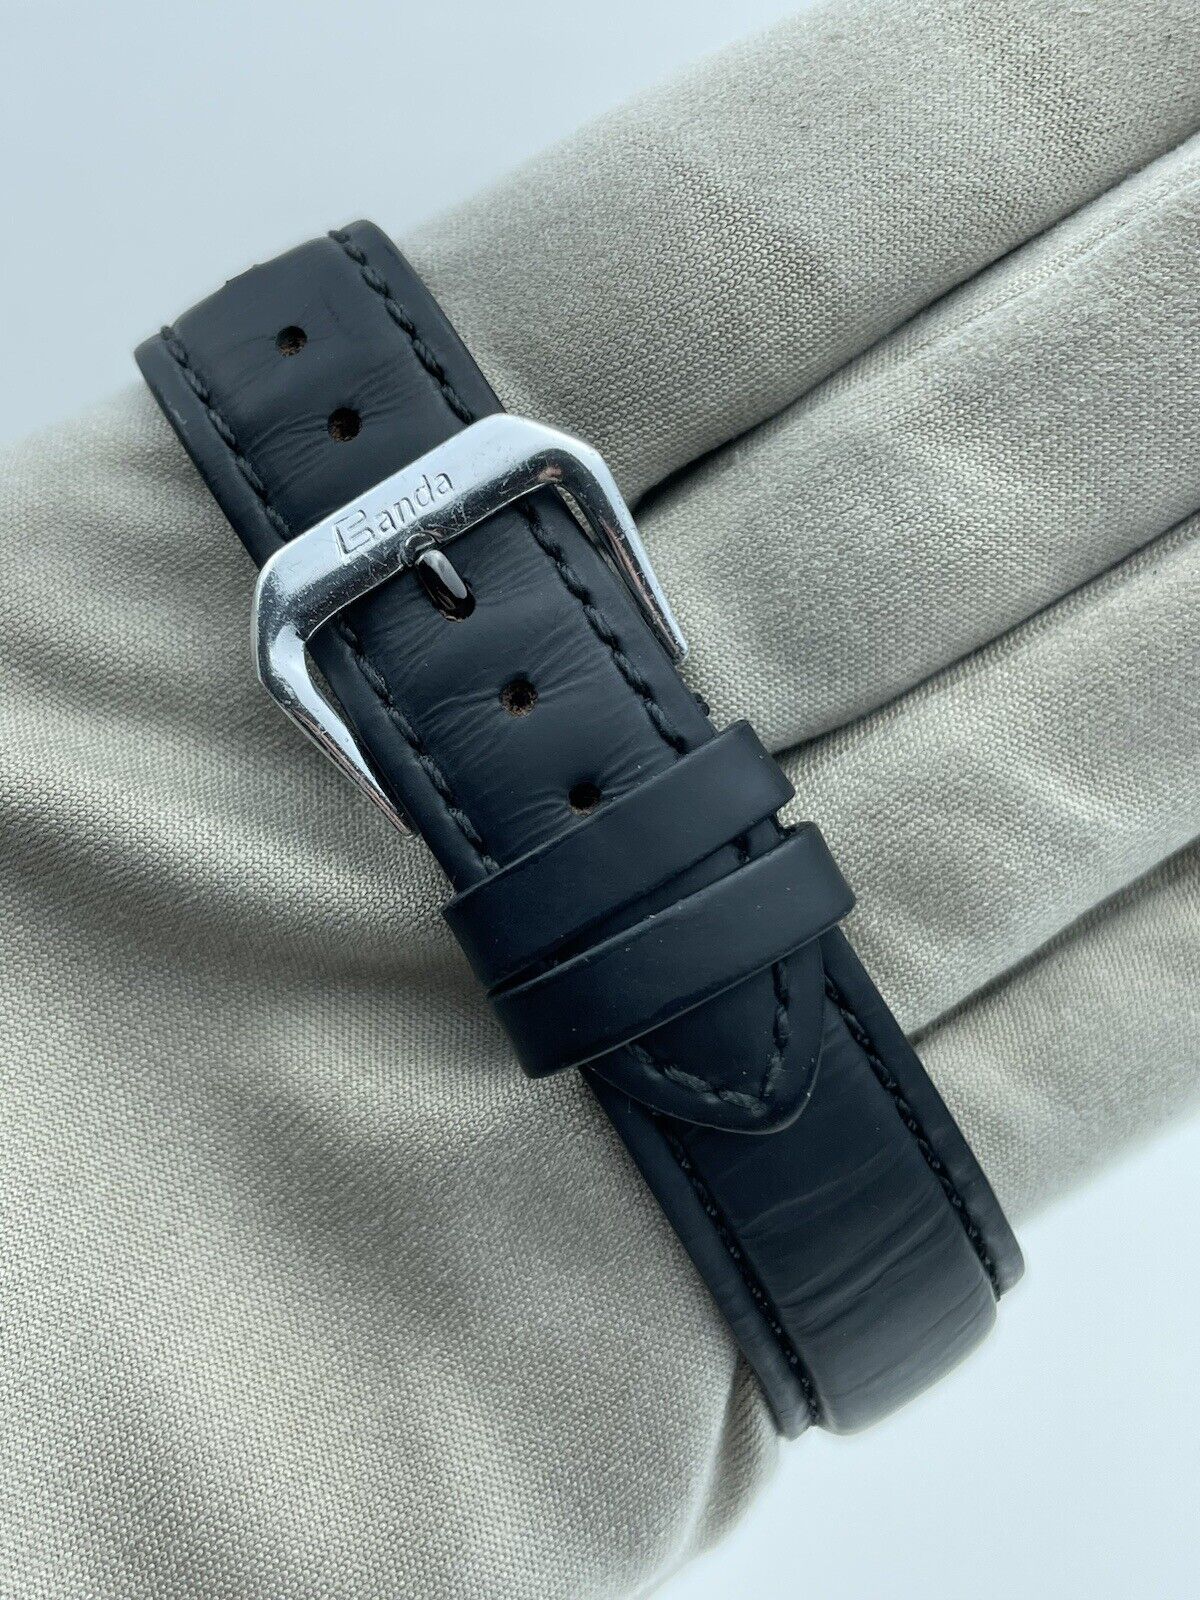 BVLGARI Via De Condotti Carbon Gold Automatic Black Leather Watch